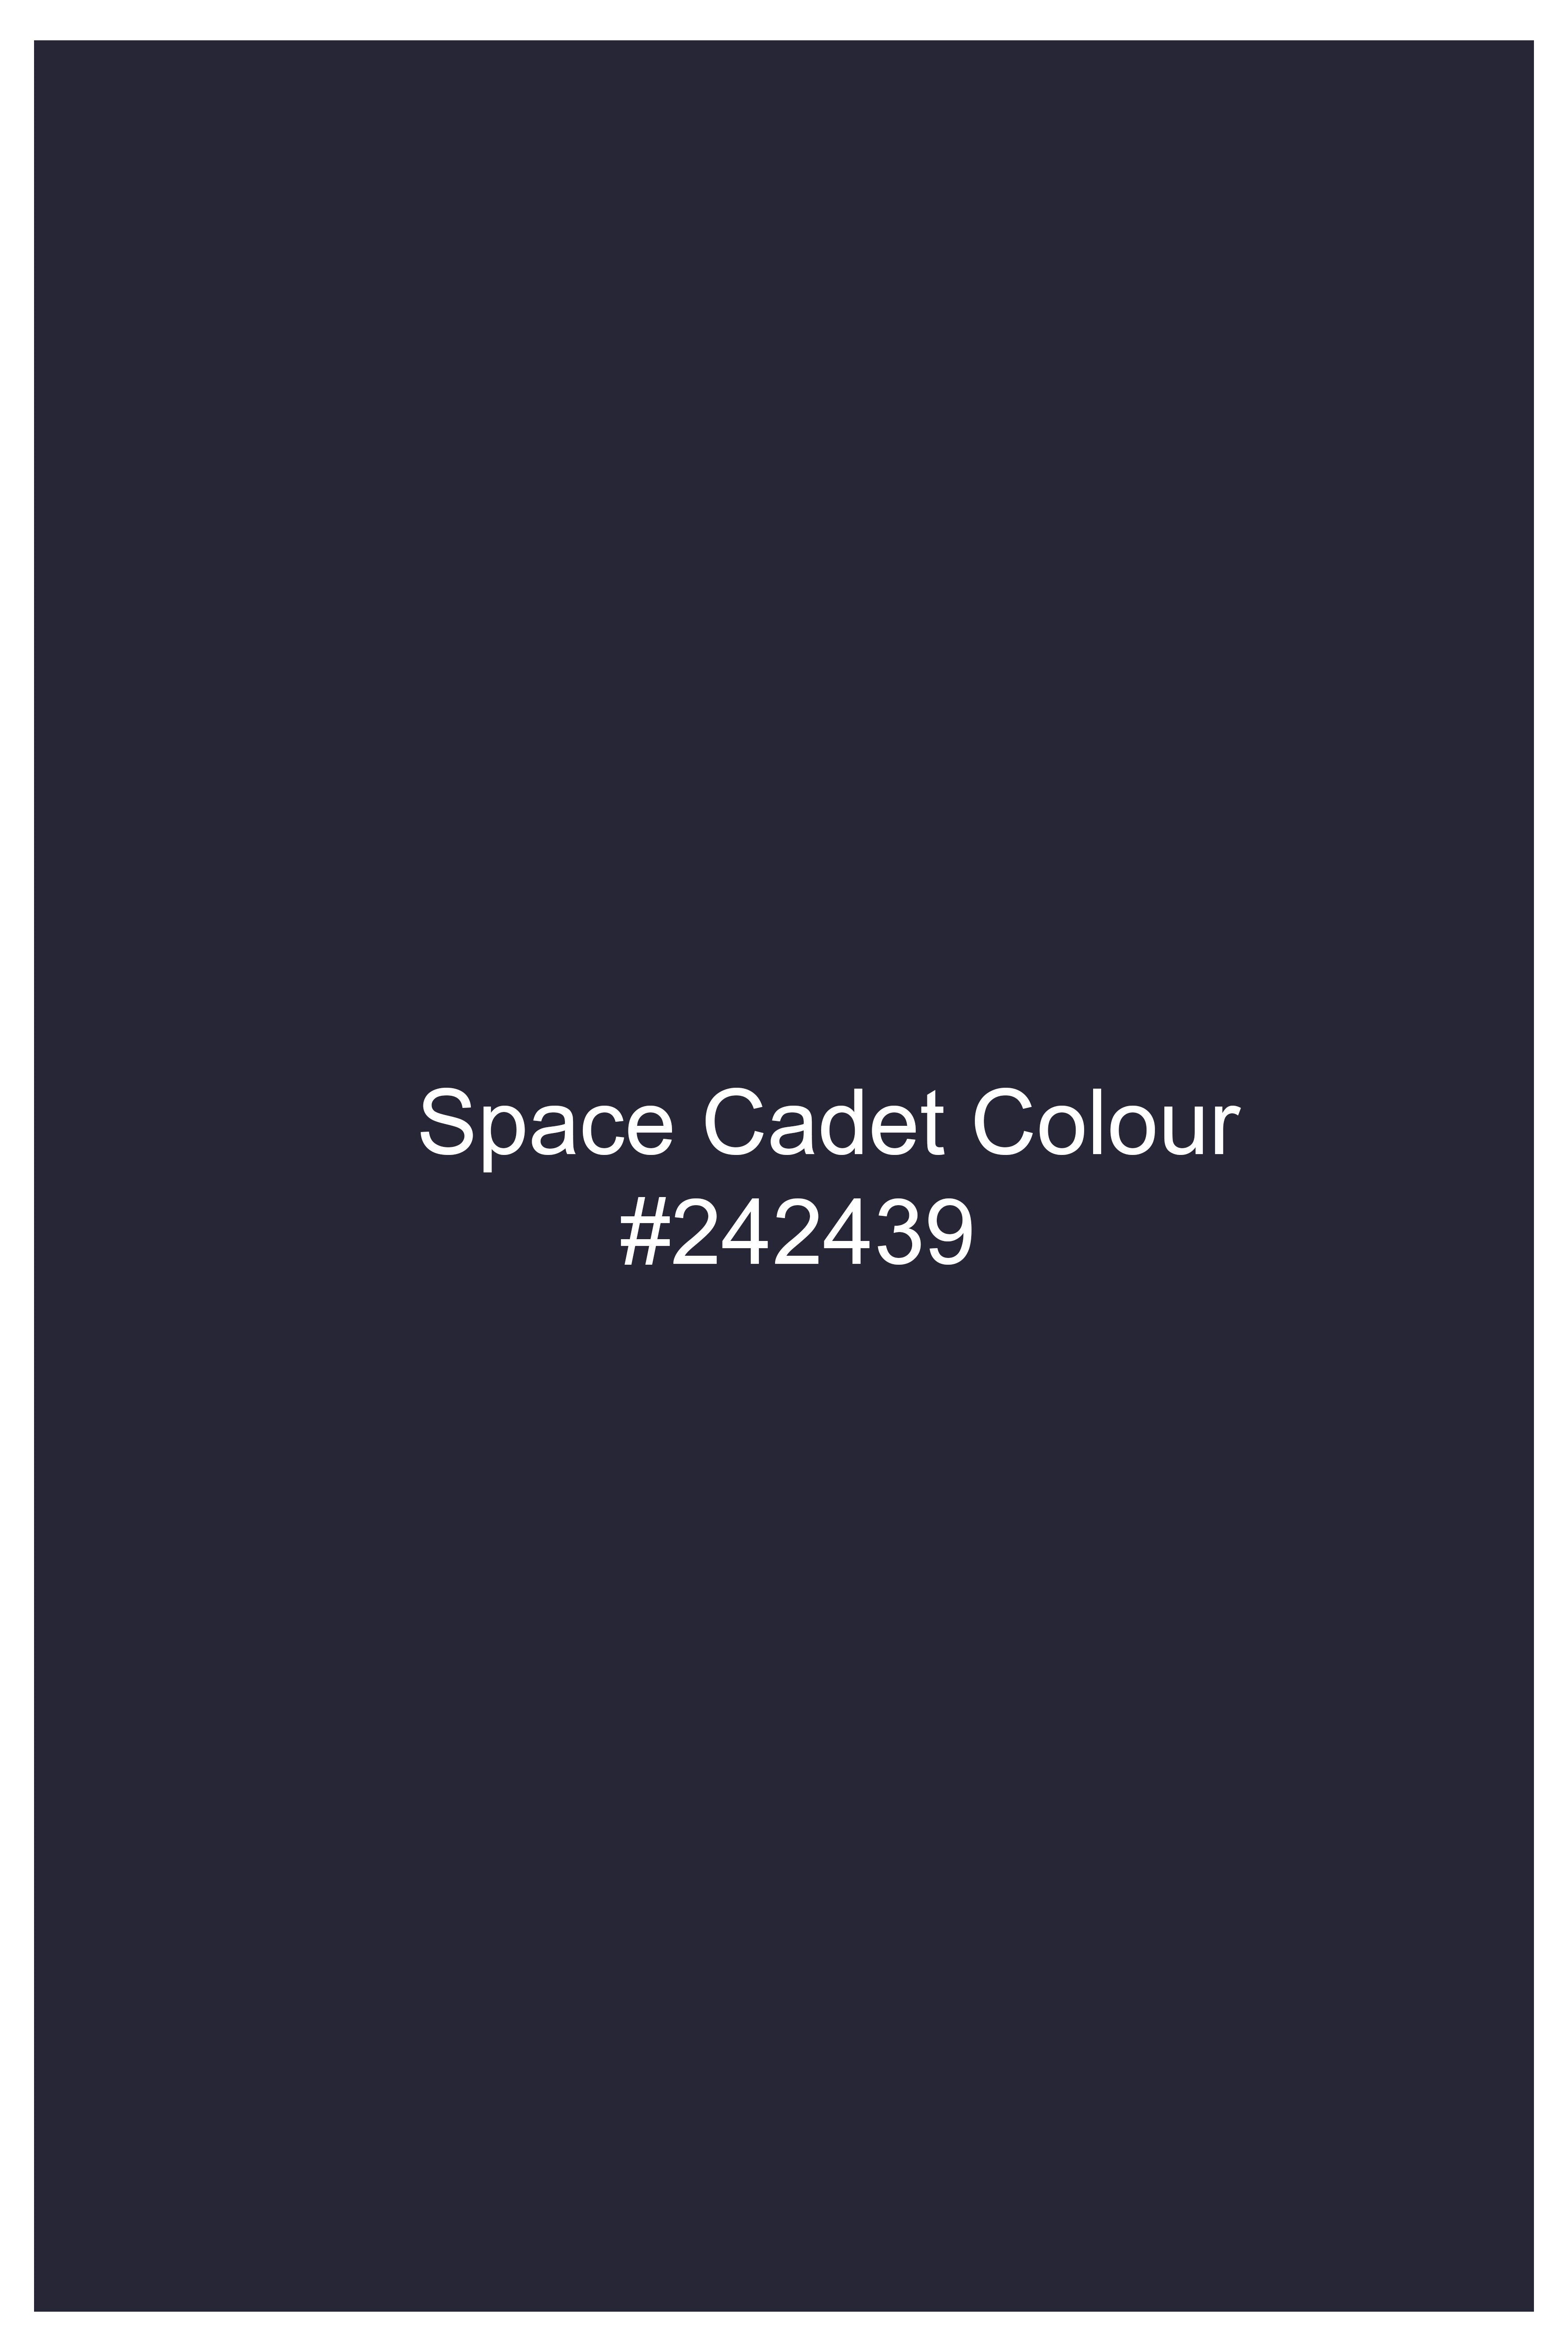 Space Cadet Blue Wool Rich Designer Blazer BL3015-D188-36, BL3015-D188-38, BL3015-D188-40, BL3015-D188-42, BL3015-D188-44, BL3015-D188-46, BL3015-D188-48, BL3015-D188-50, BL3015-D188-52, BL3015-D188-54, BL3015-D188-56, BL3015-D188-58, BL3015-D188-60